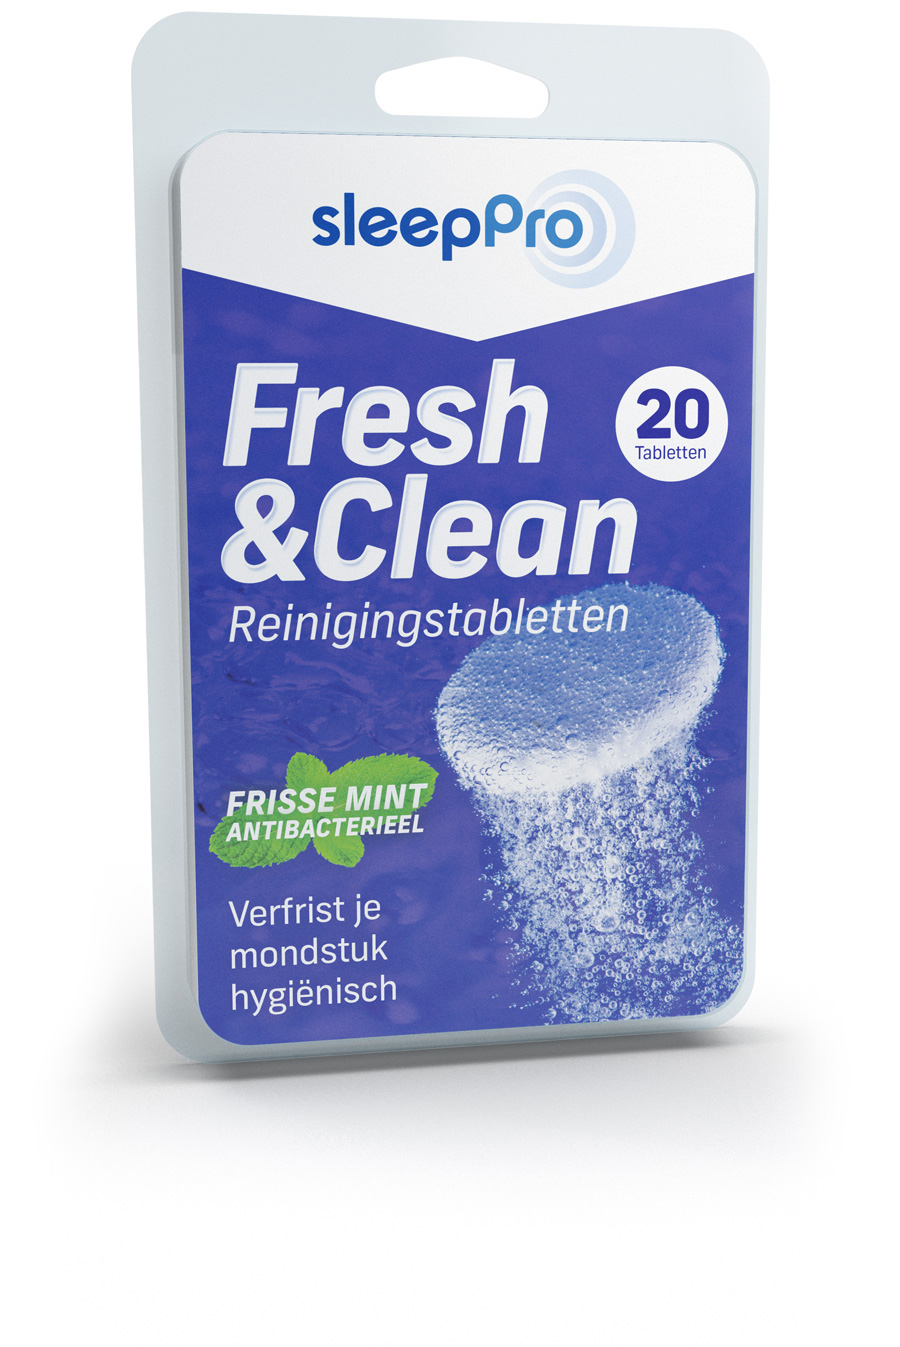 SleepPro Fresh & Clean Reinigingstabletten